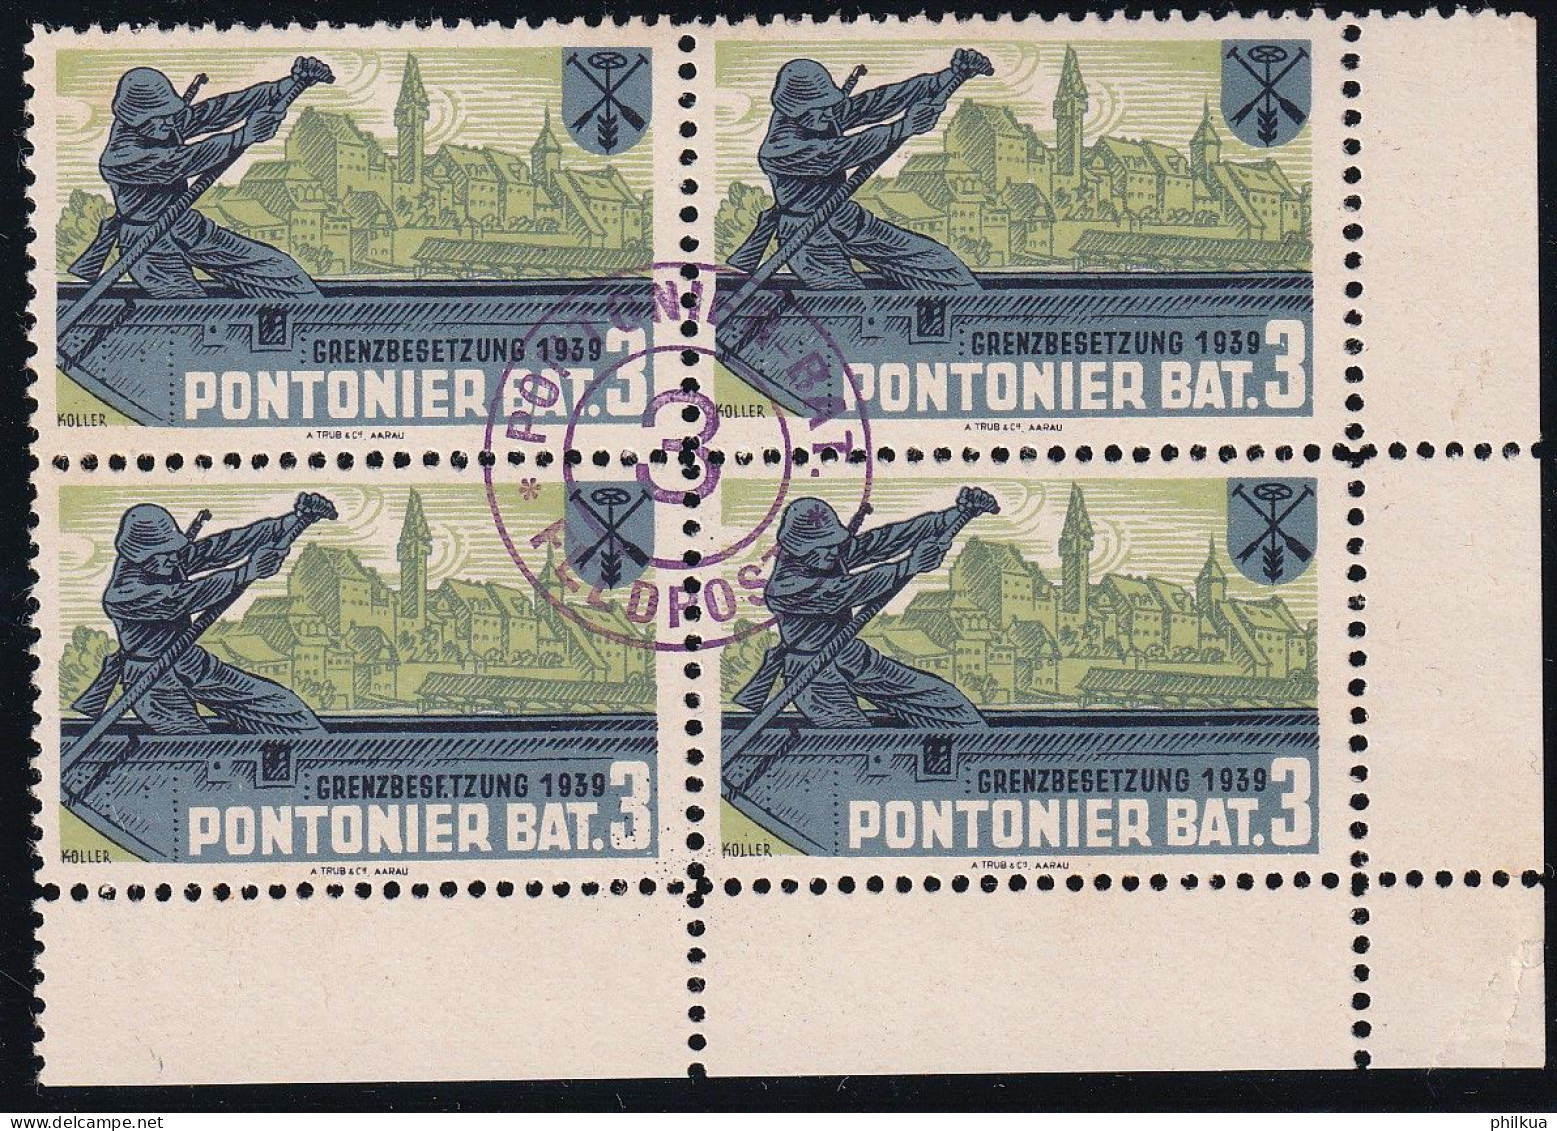 Pontoniere 27 Gezähnter Vierer Block - Pontonier Bat. 3 - Mit Truppemstempel - Postfrisch/**/MNH - Labels